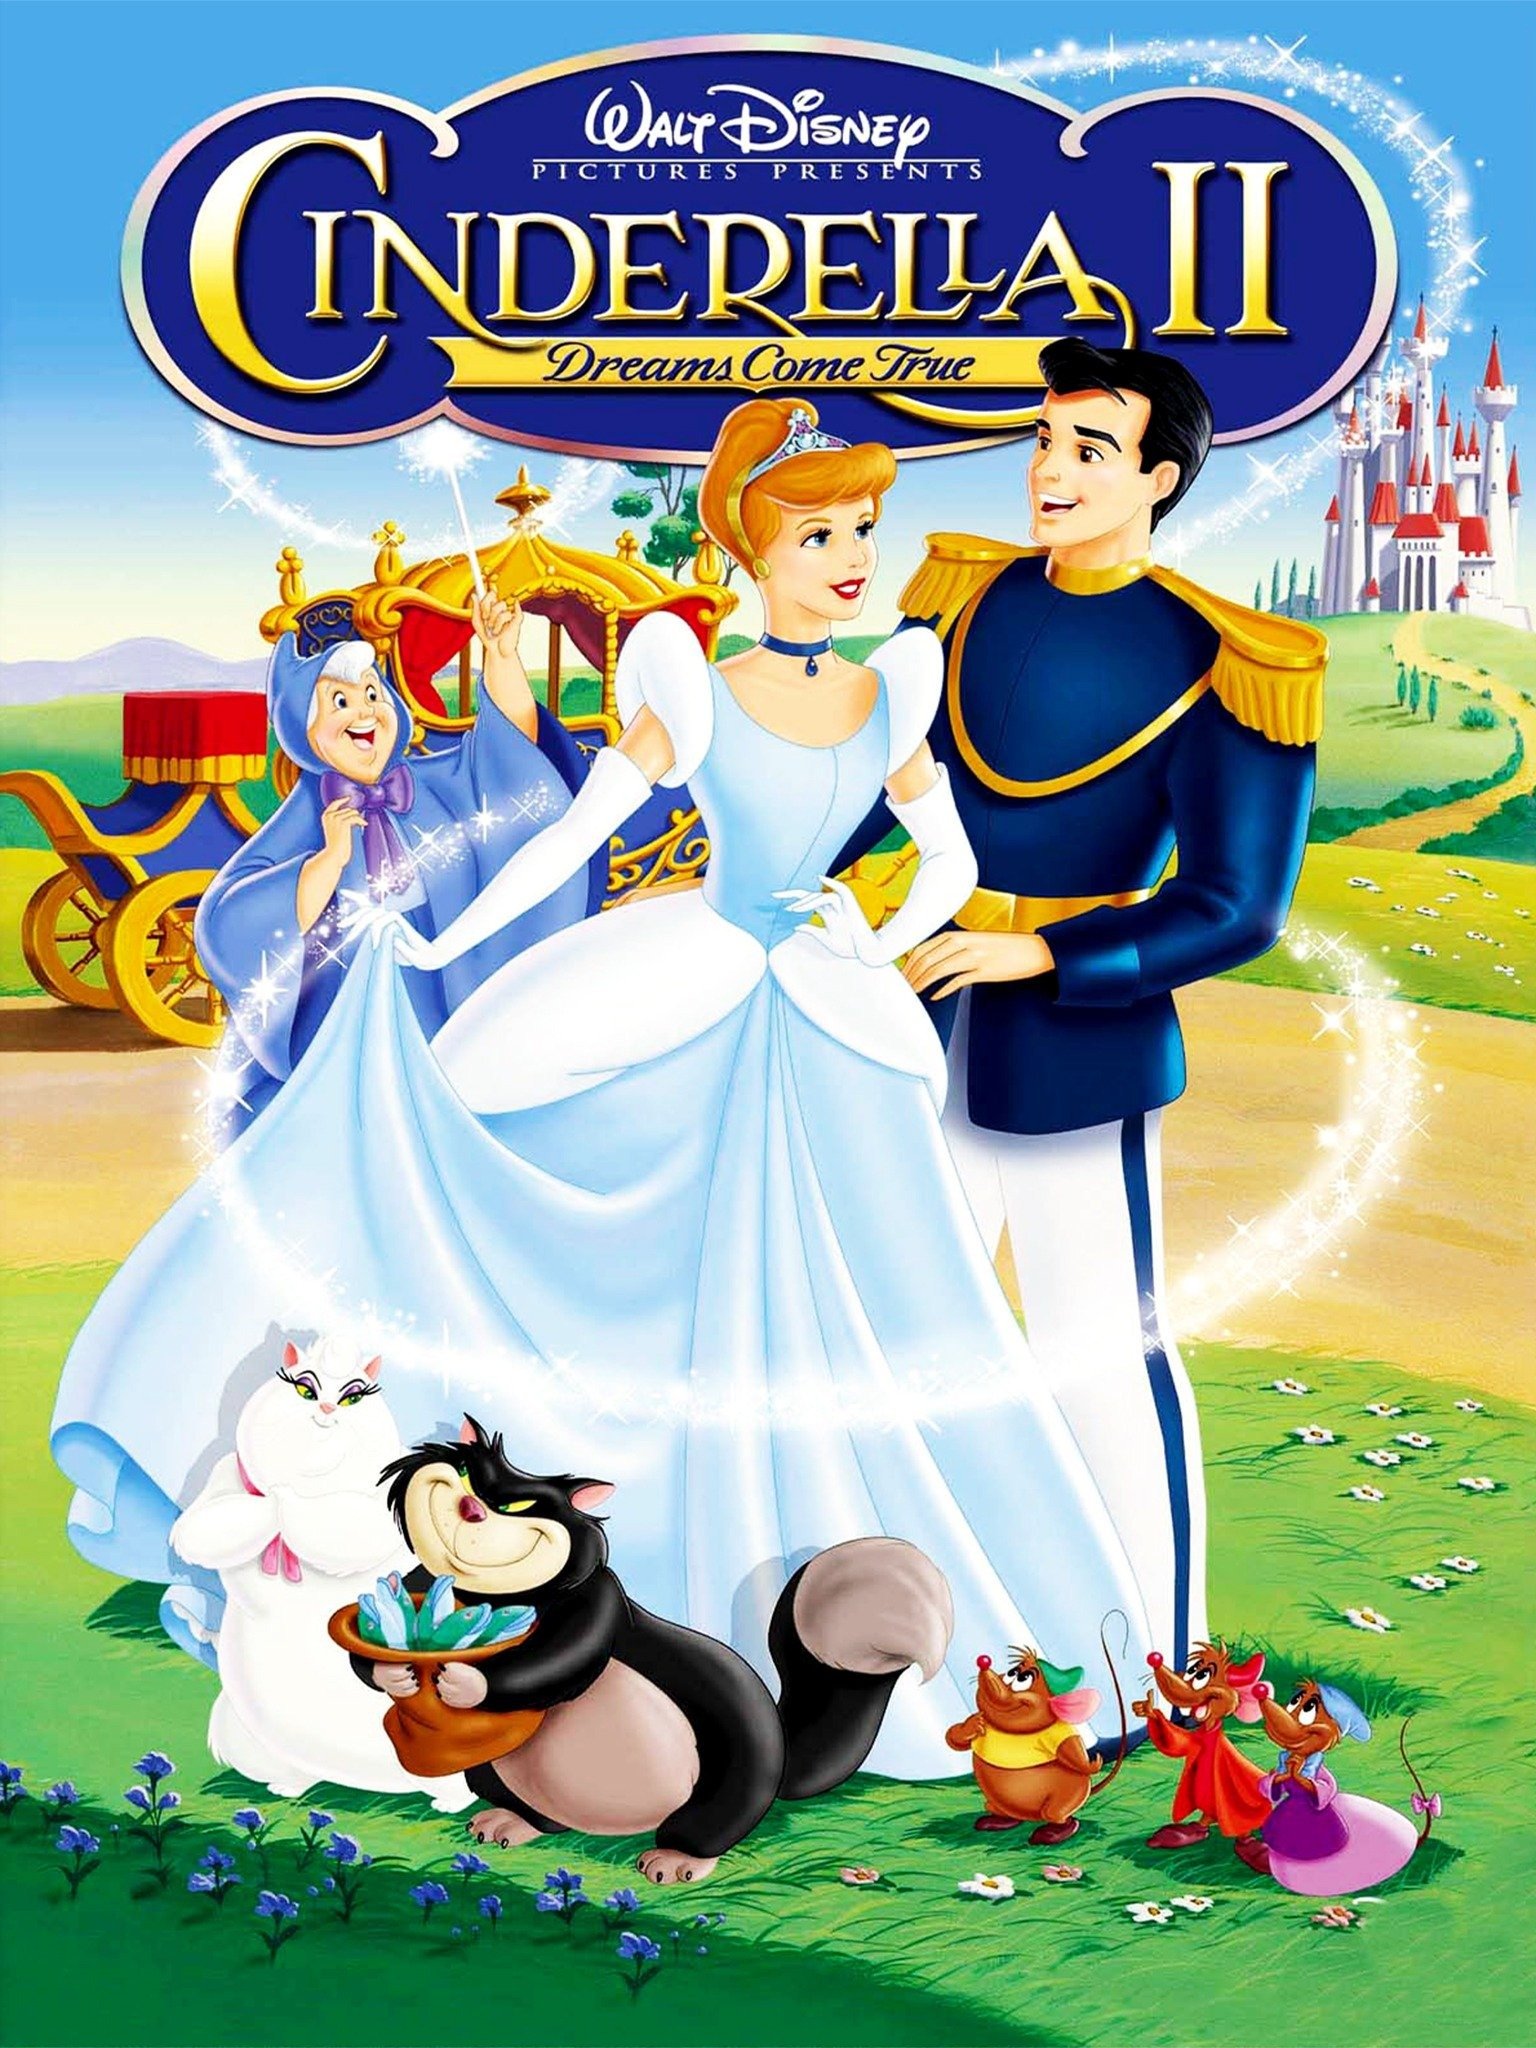 Plateau Tilsyneladende et eller andet sted Cinderella II: Dreams Come True - Rotten Tomatoes